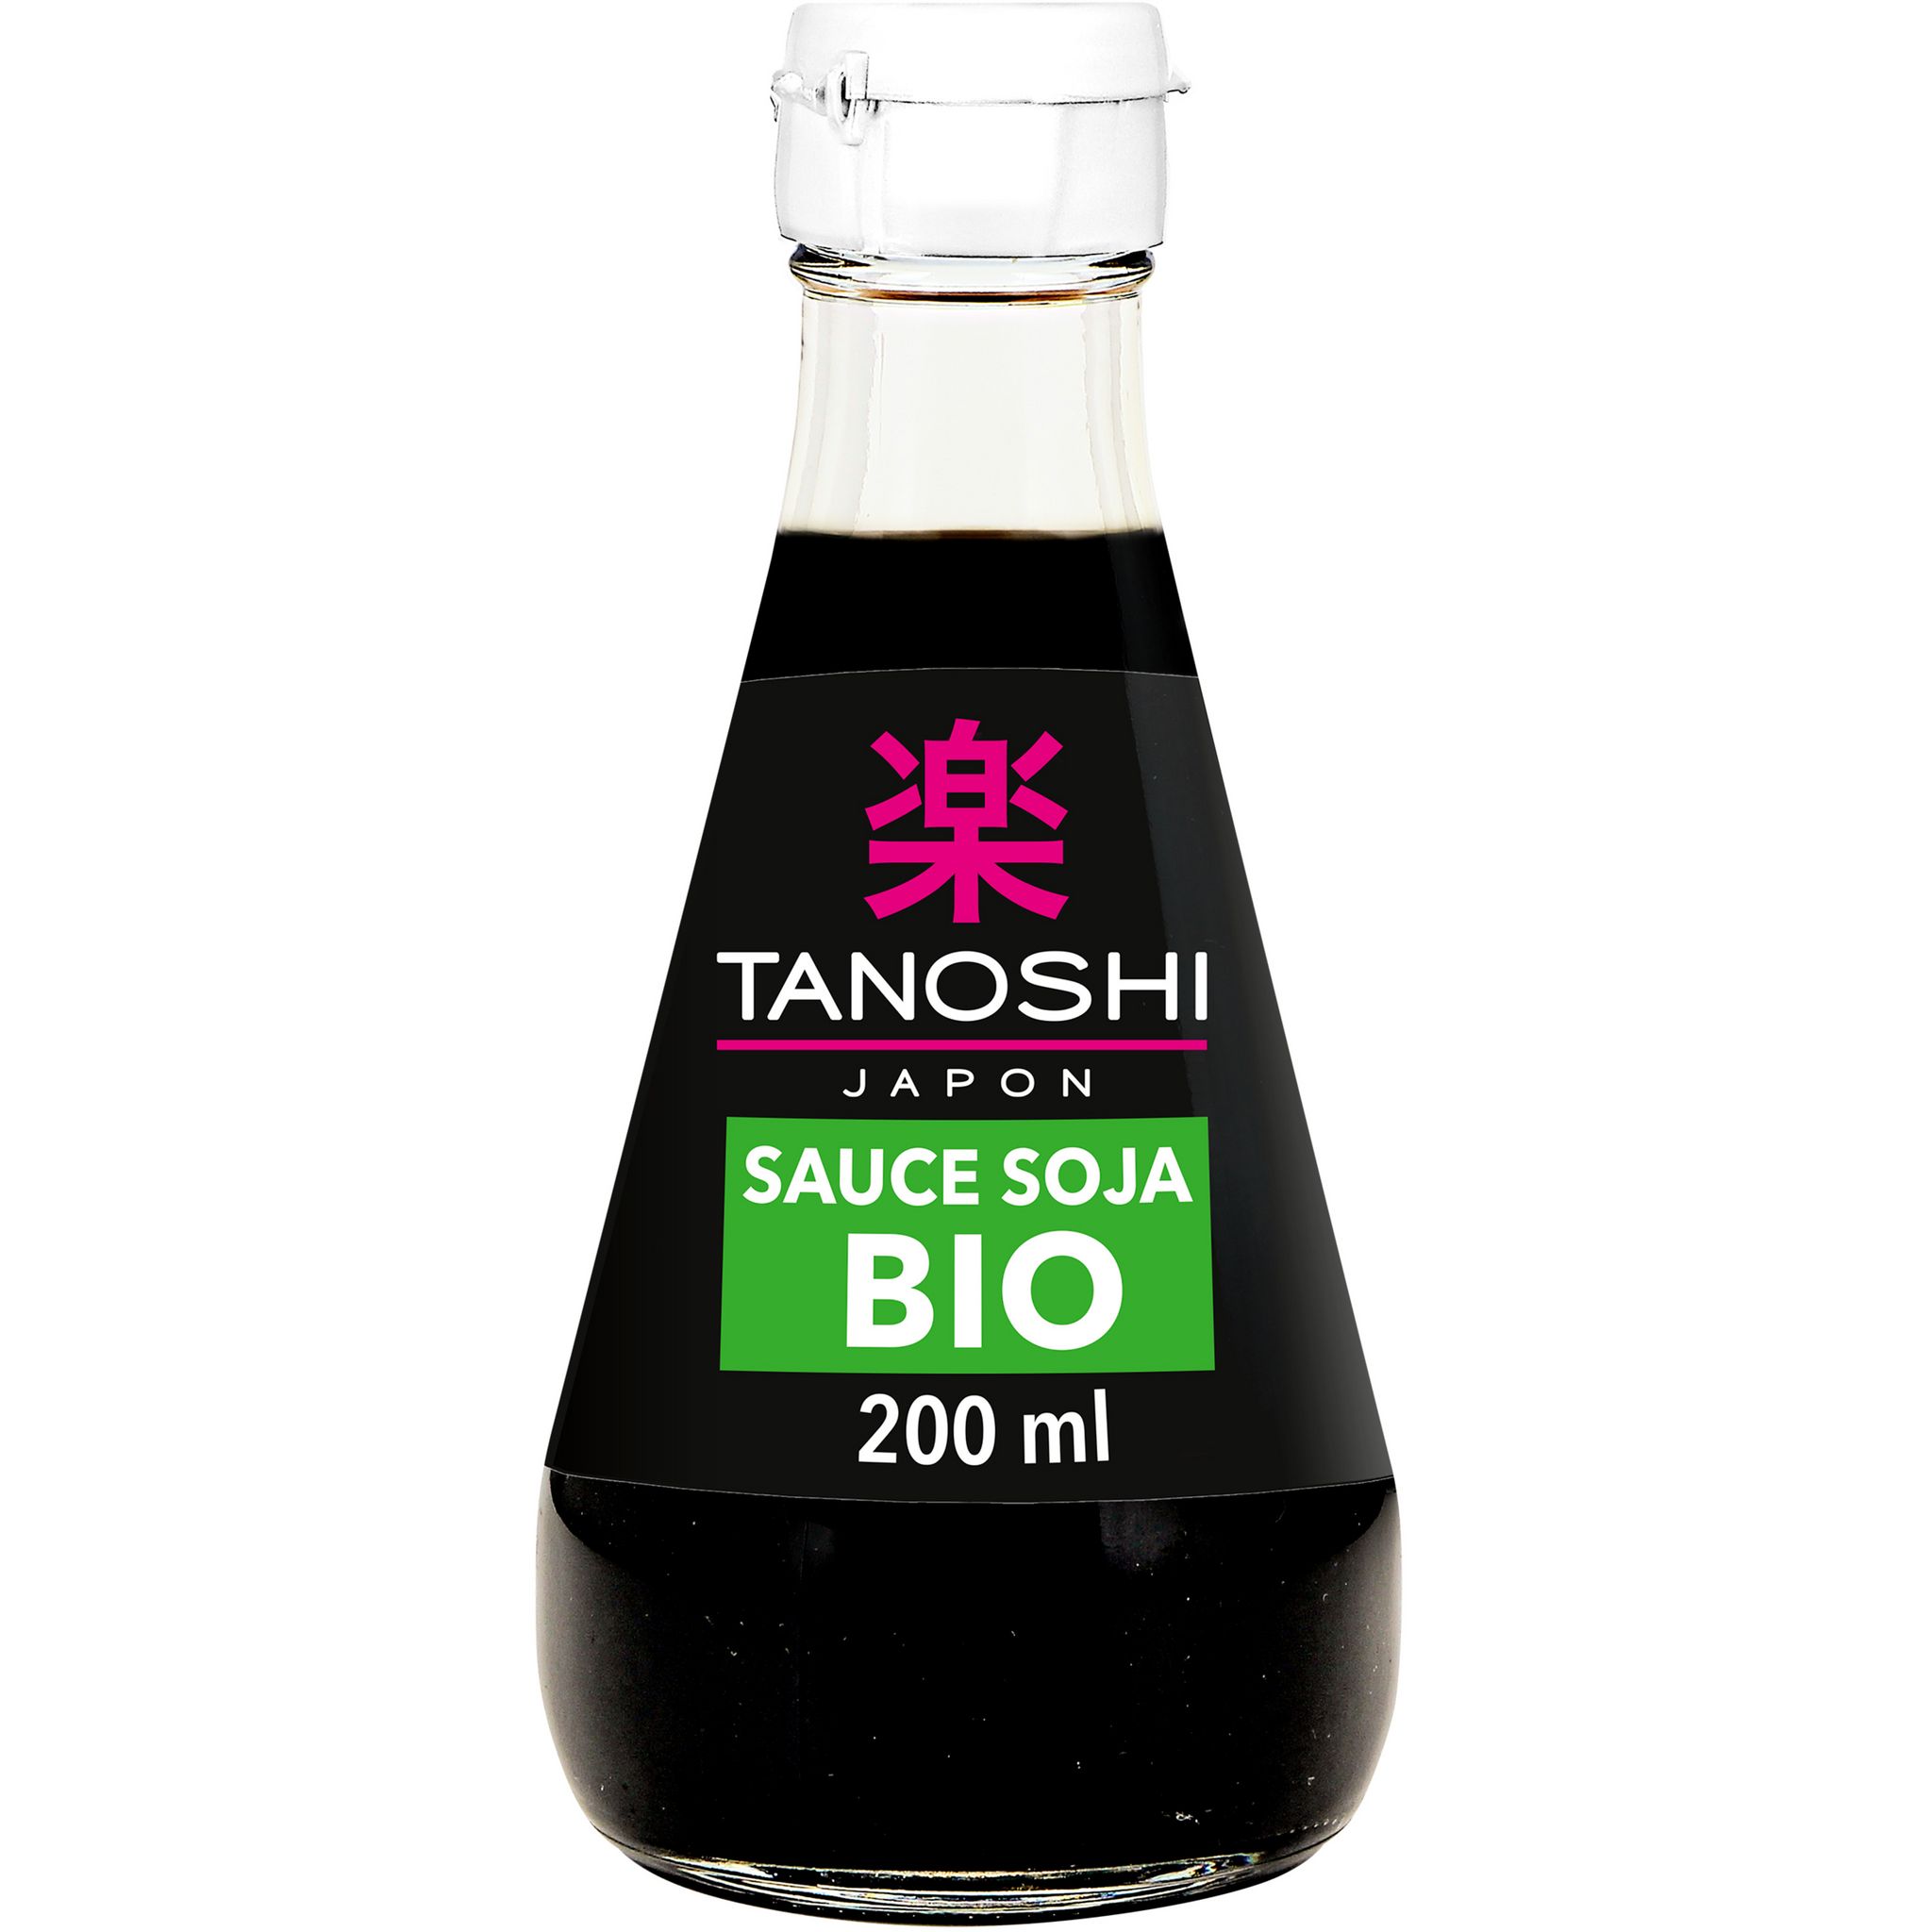 Sauce soja salée TANOSHI